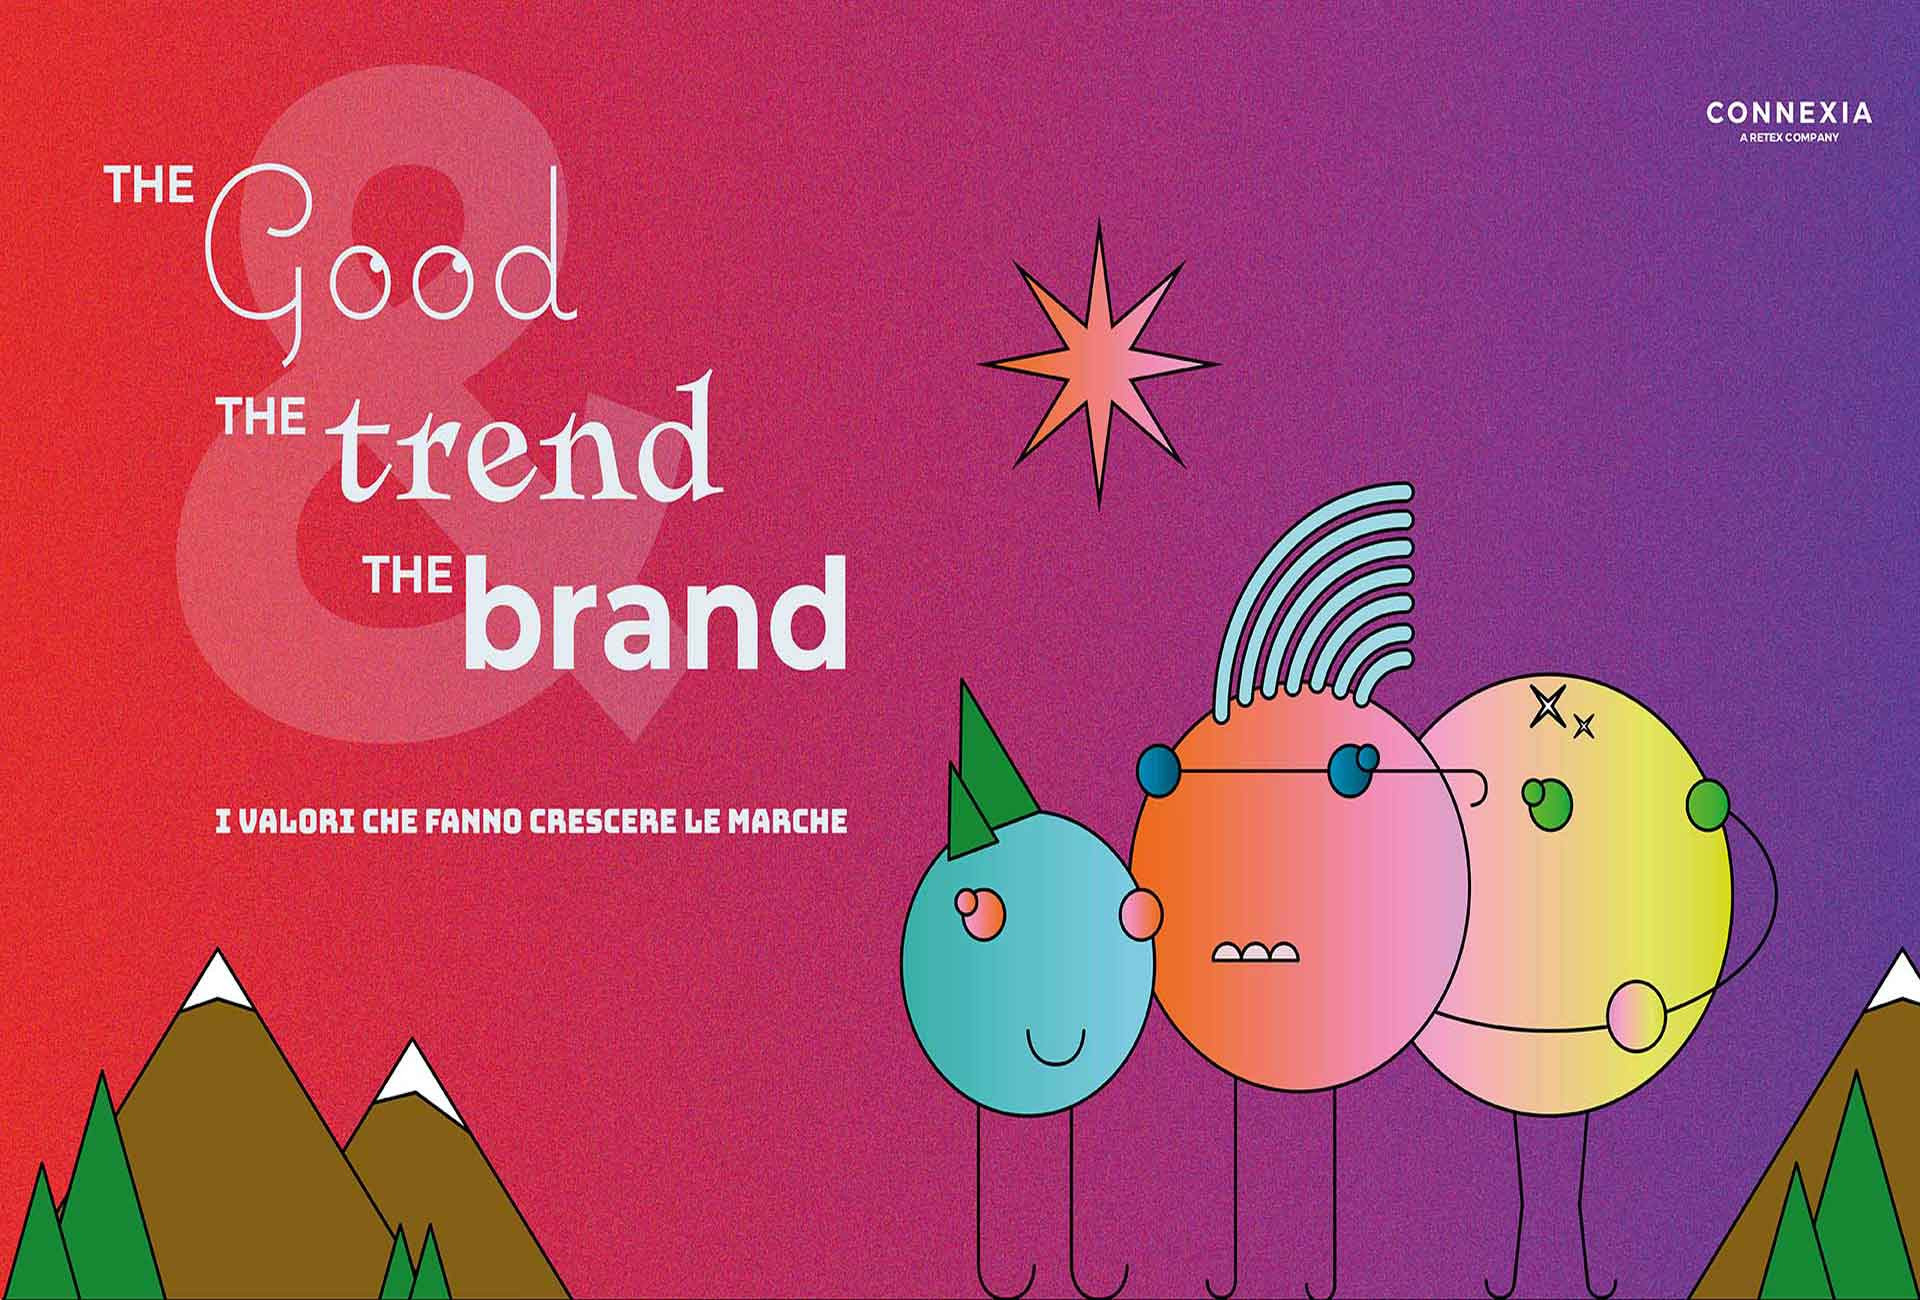 The Good, the Trend and The Brand: i valori che fanno crescere le marche secondo Connexia